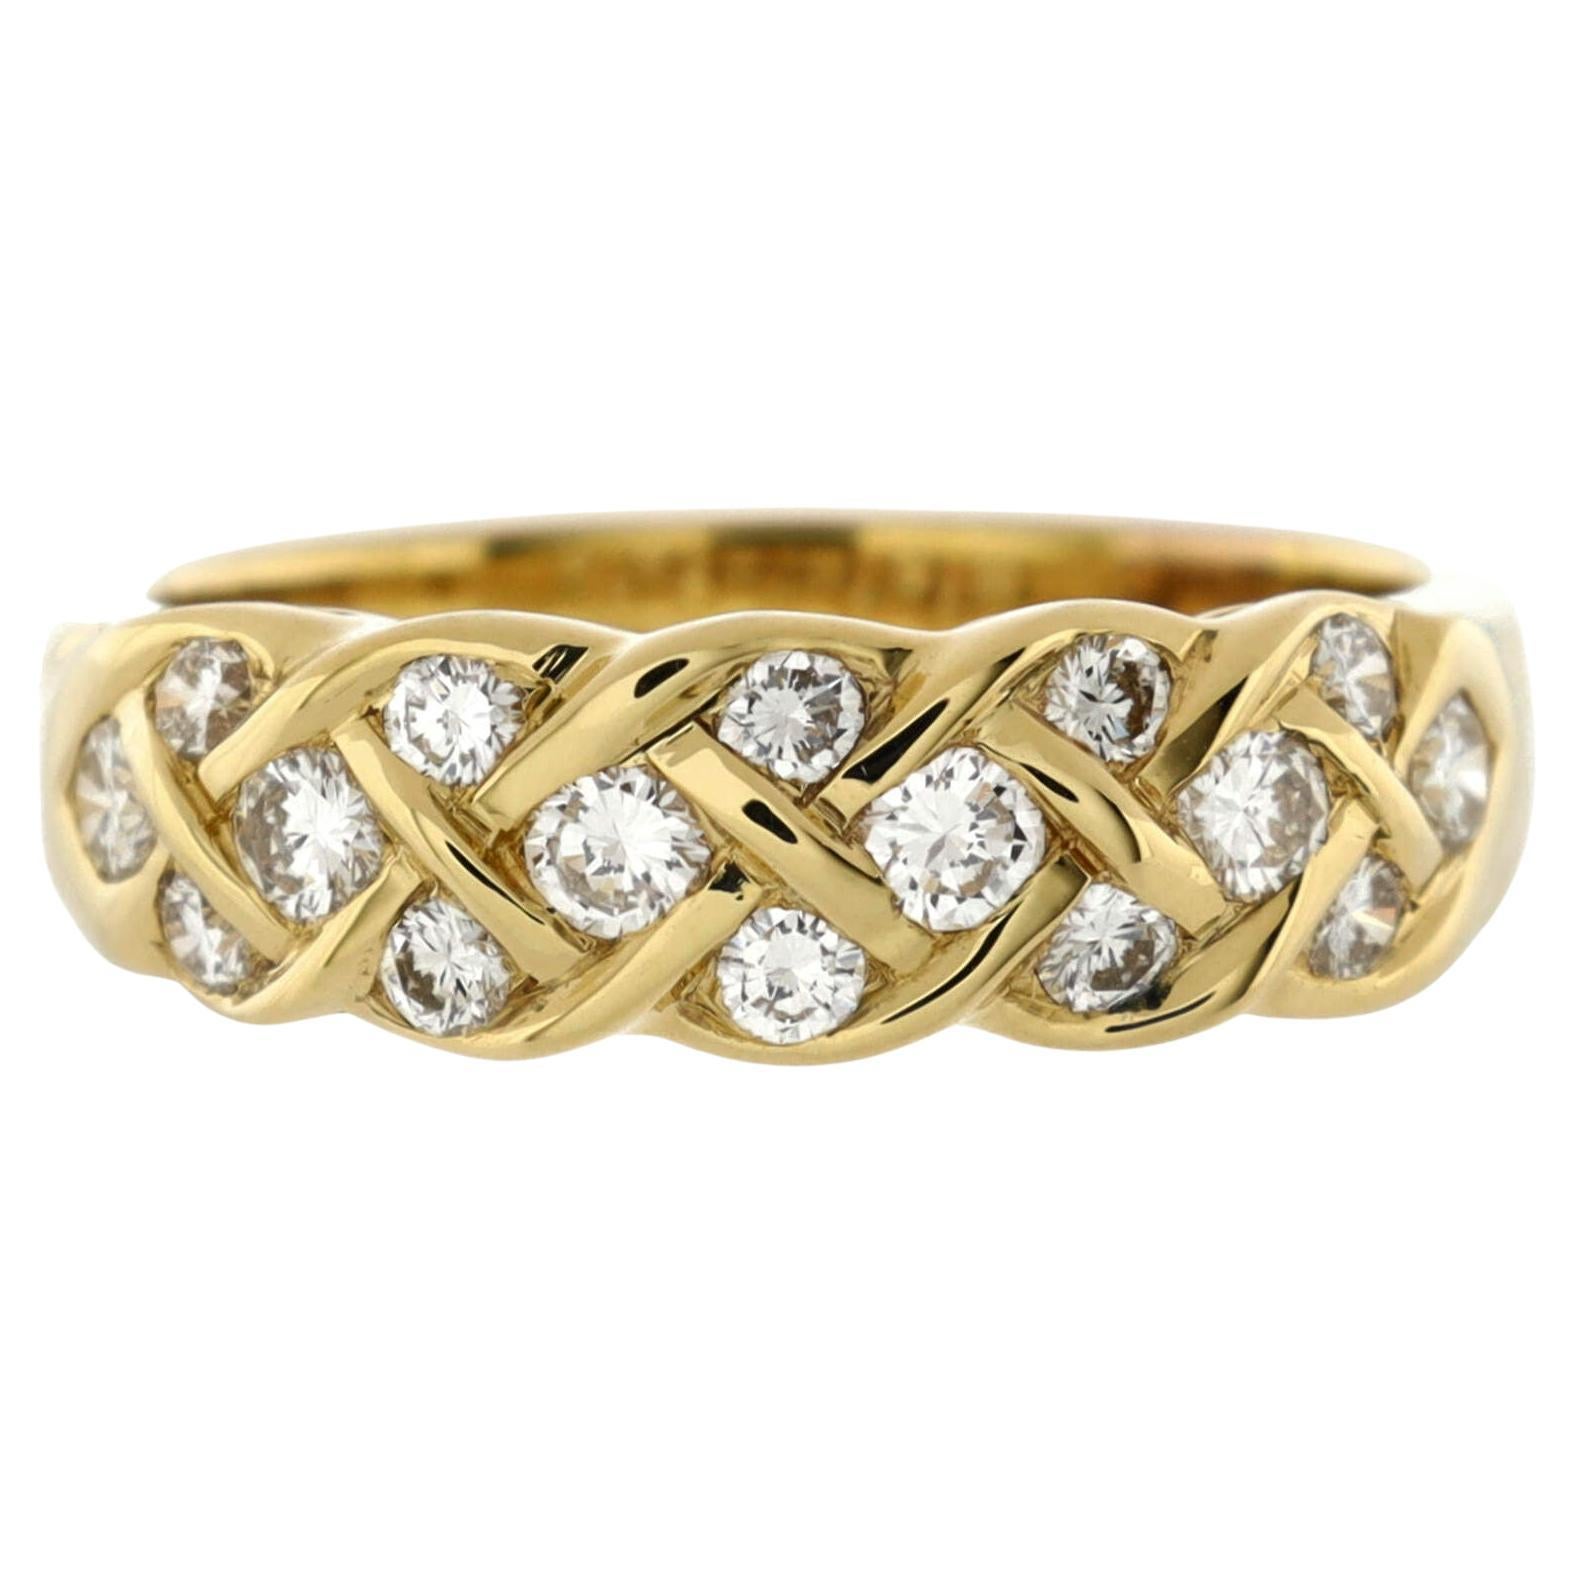 Louis Vuitton Ring Rose Gold Empreinte Ring Rose Gold 750 Size 51 size 5.75